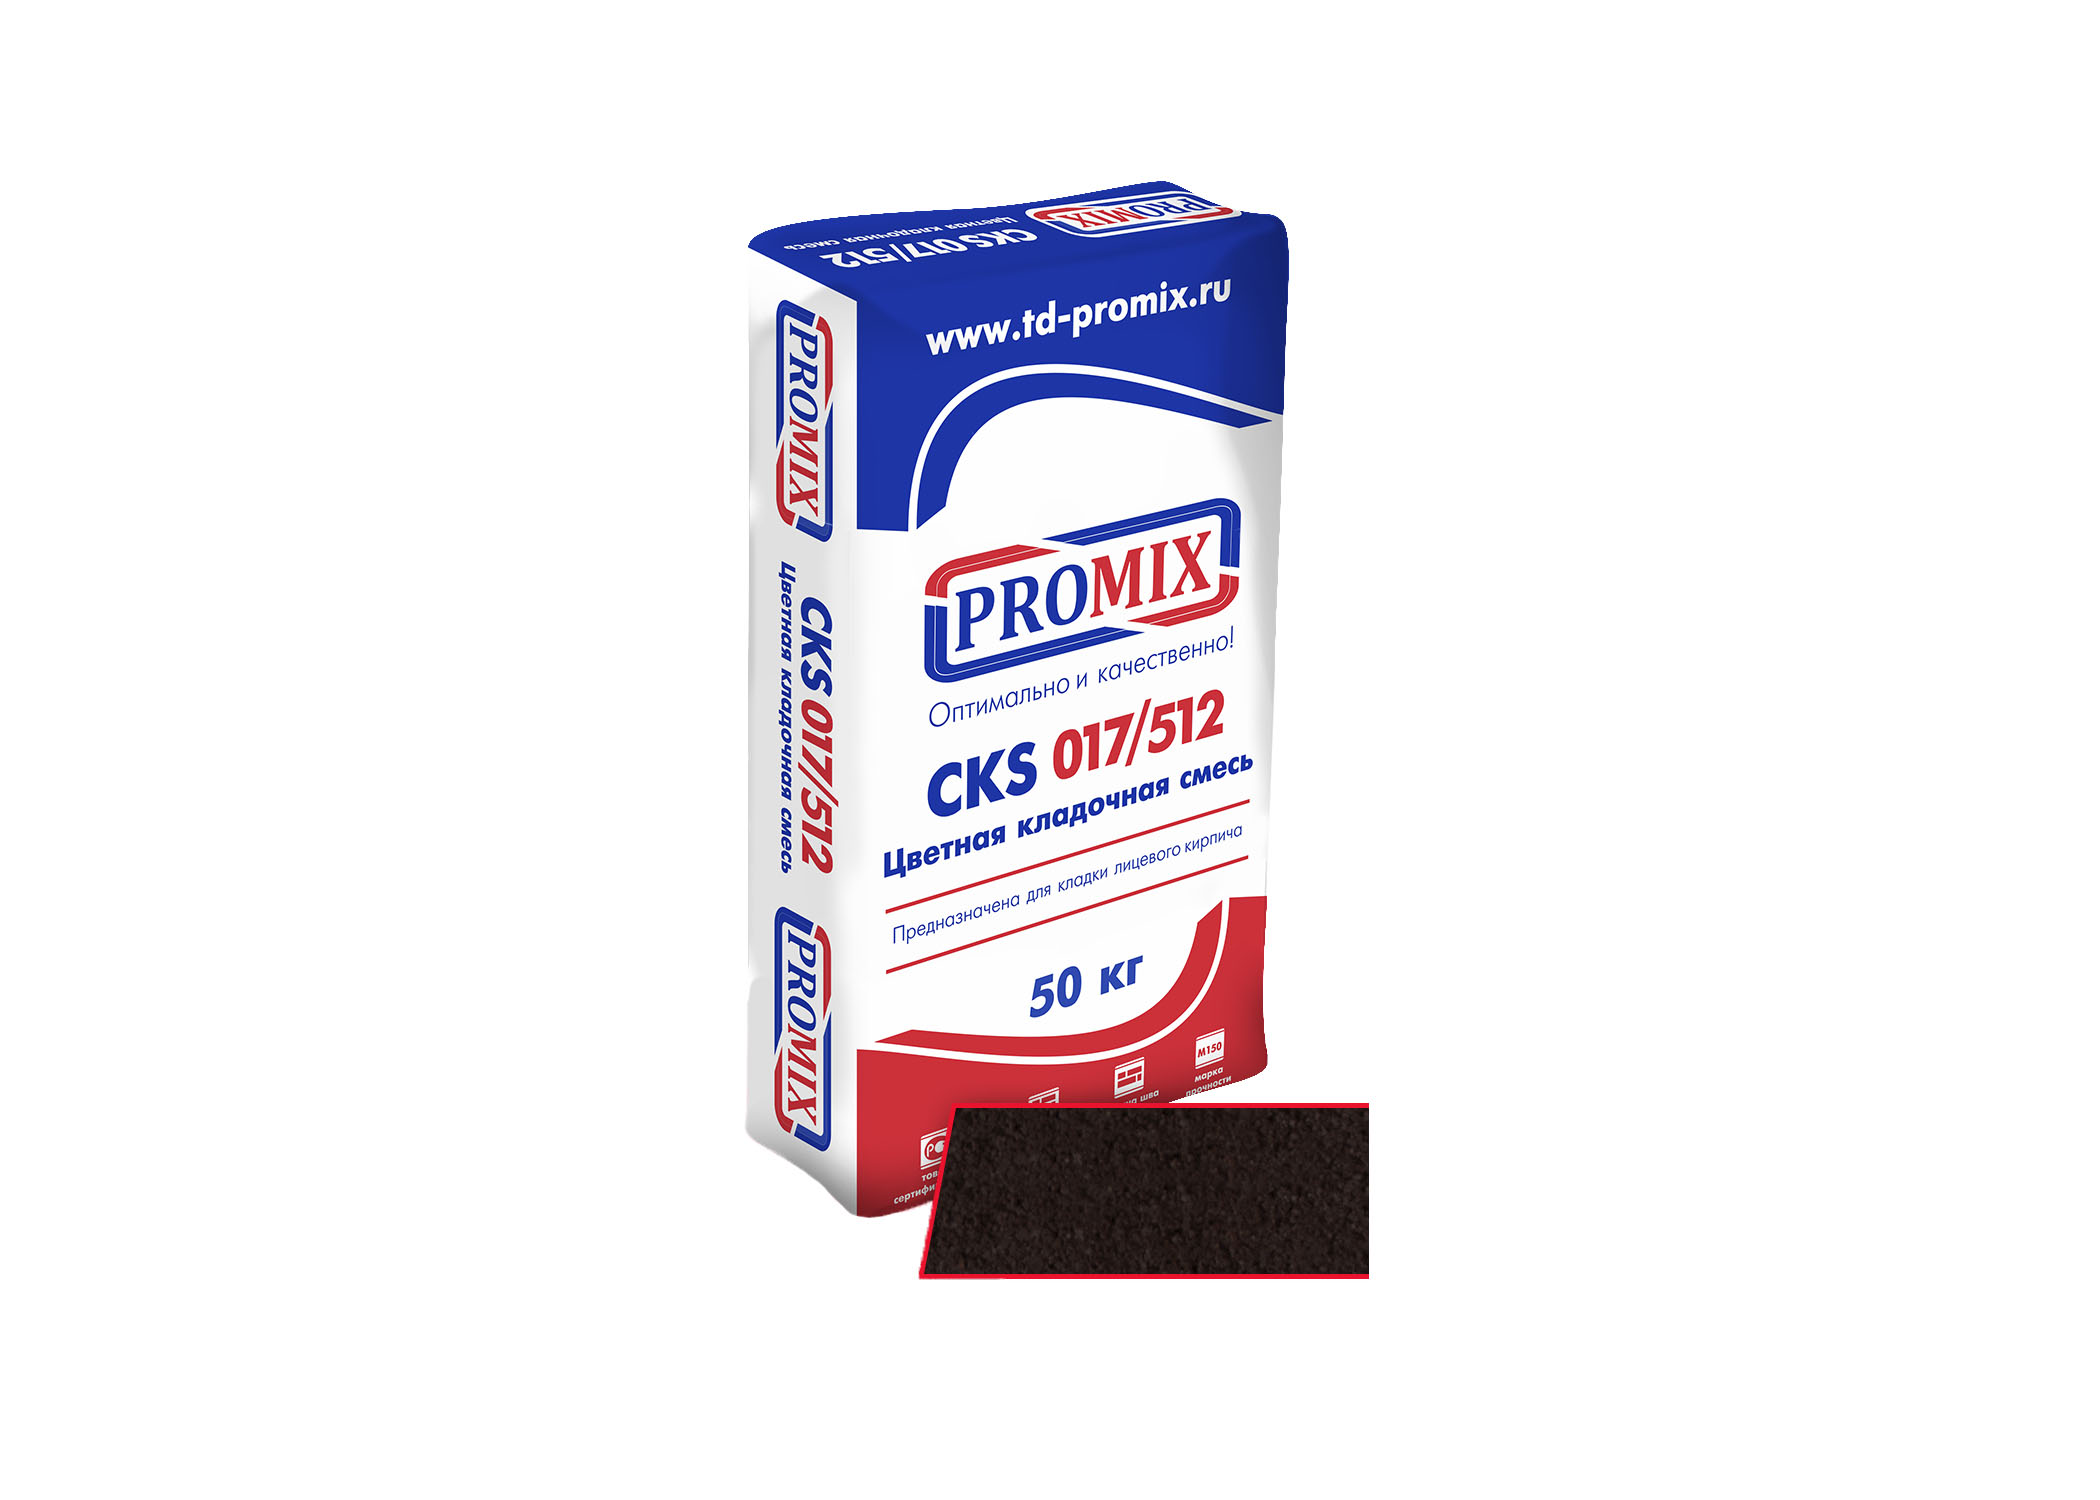 Promix Цветная кладочная смесь CKS 017 Шоколадная, 50 кг